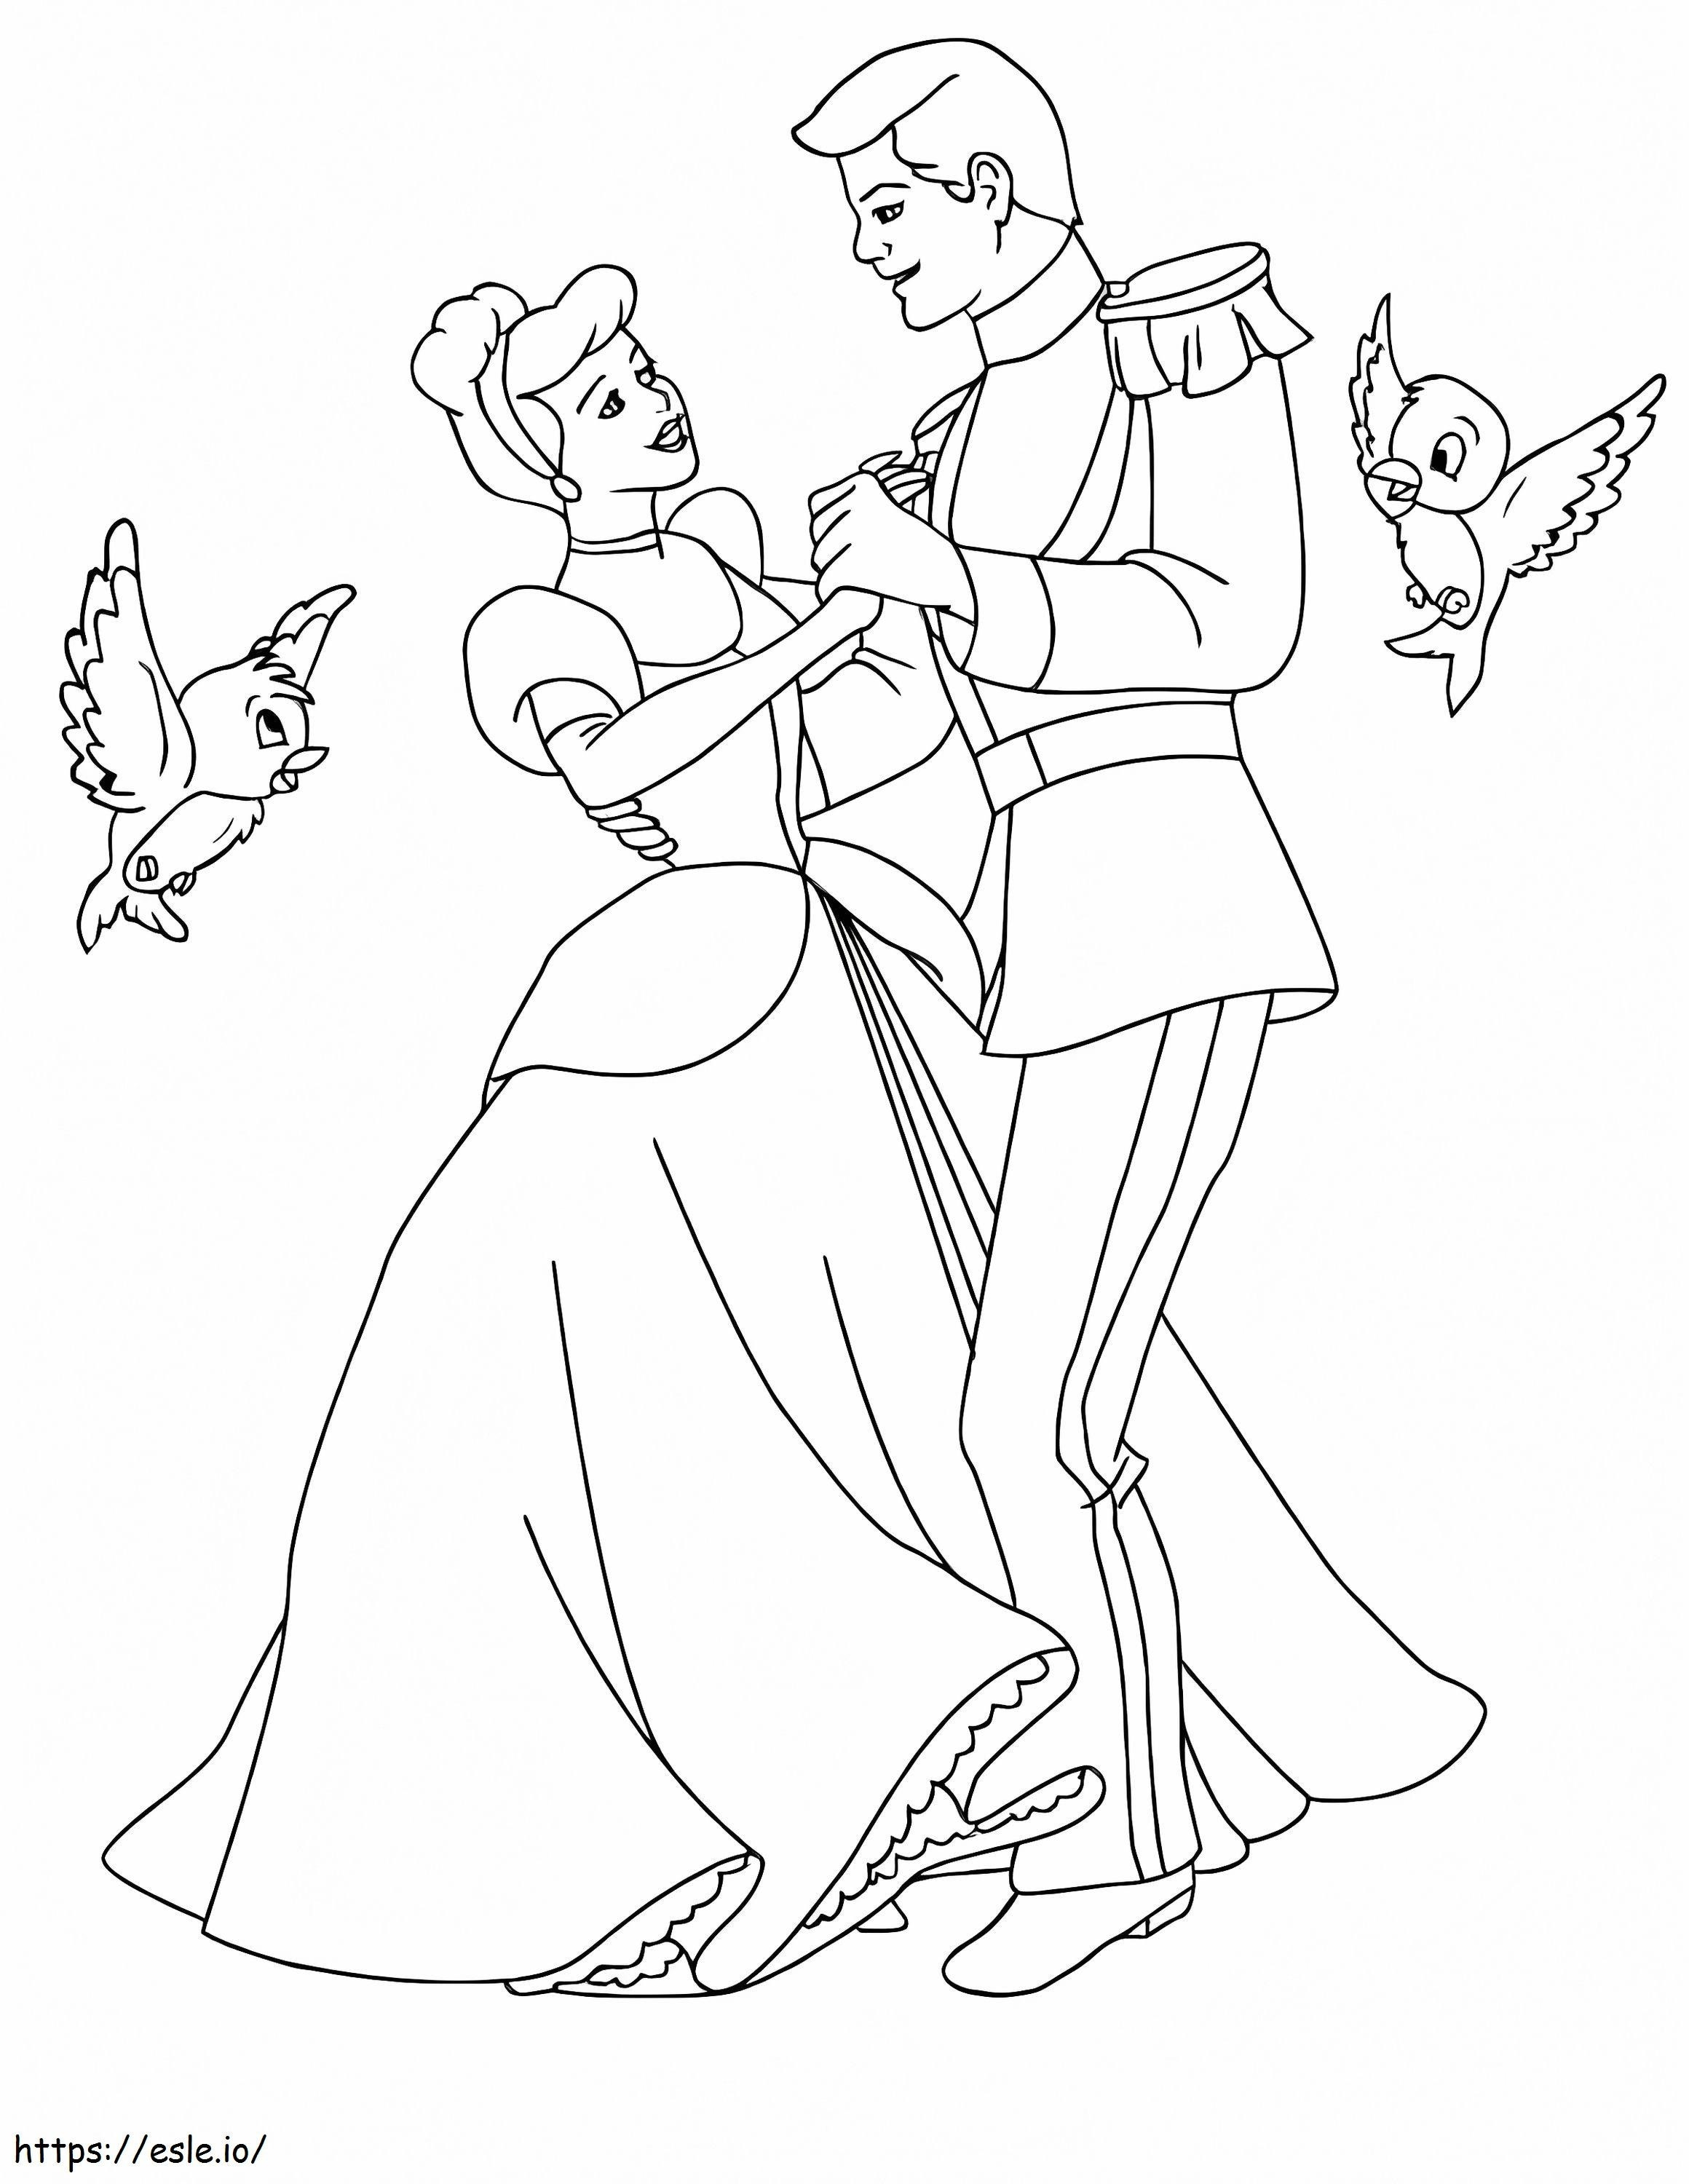 Kopciuszek i książę tańczący z dwoma ptakami kolorowanka